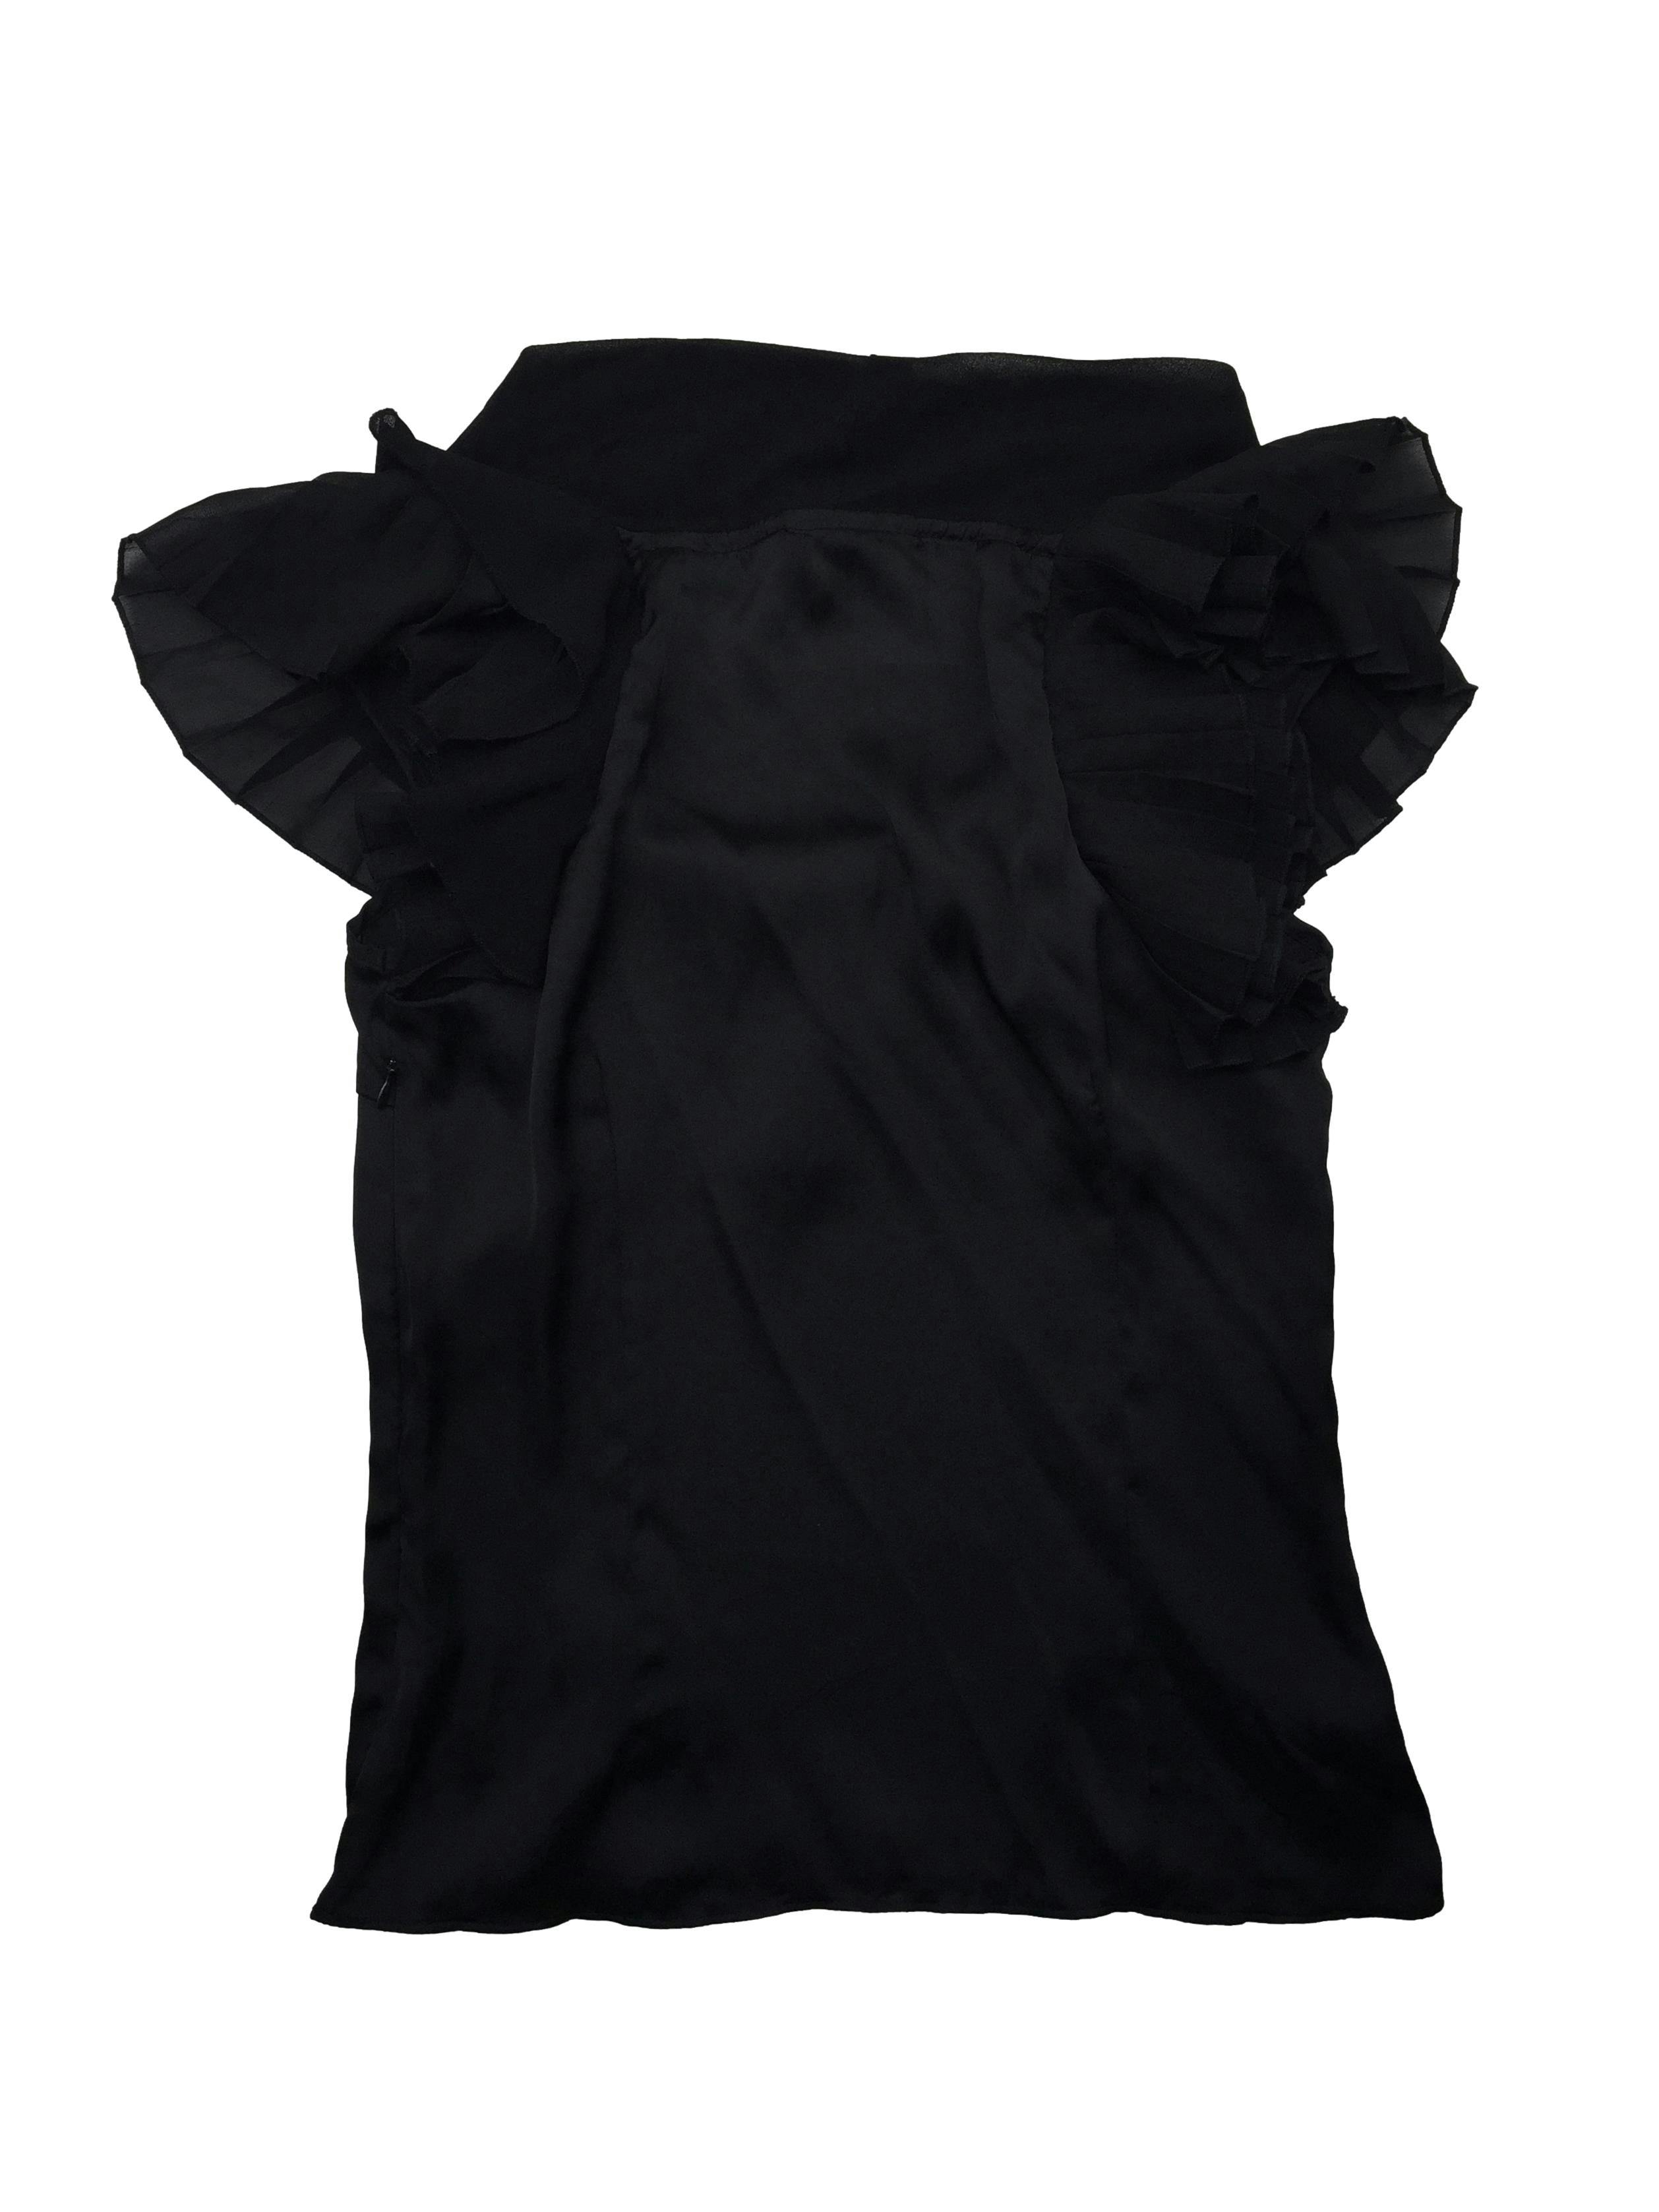 Blusa tipo seda negra, cuello bote con volantes de gasa y cierre lateral invisible. Busto 90cm, Largo 55cm.